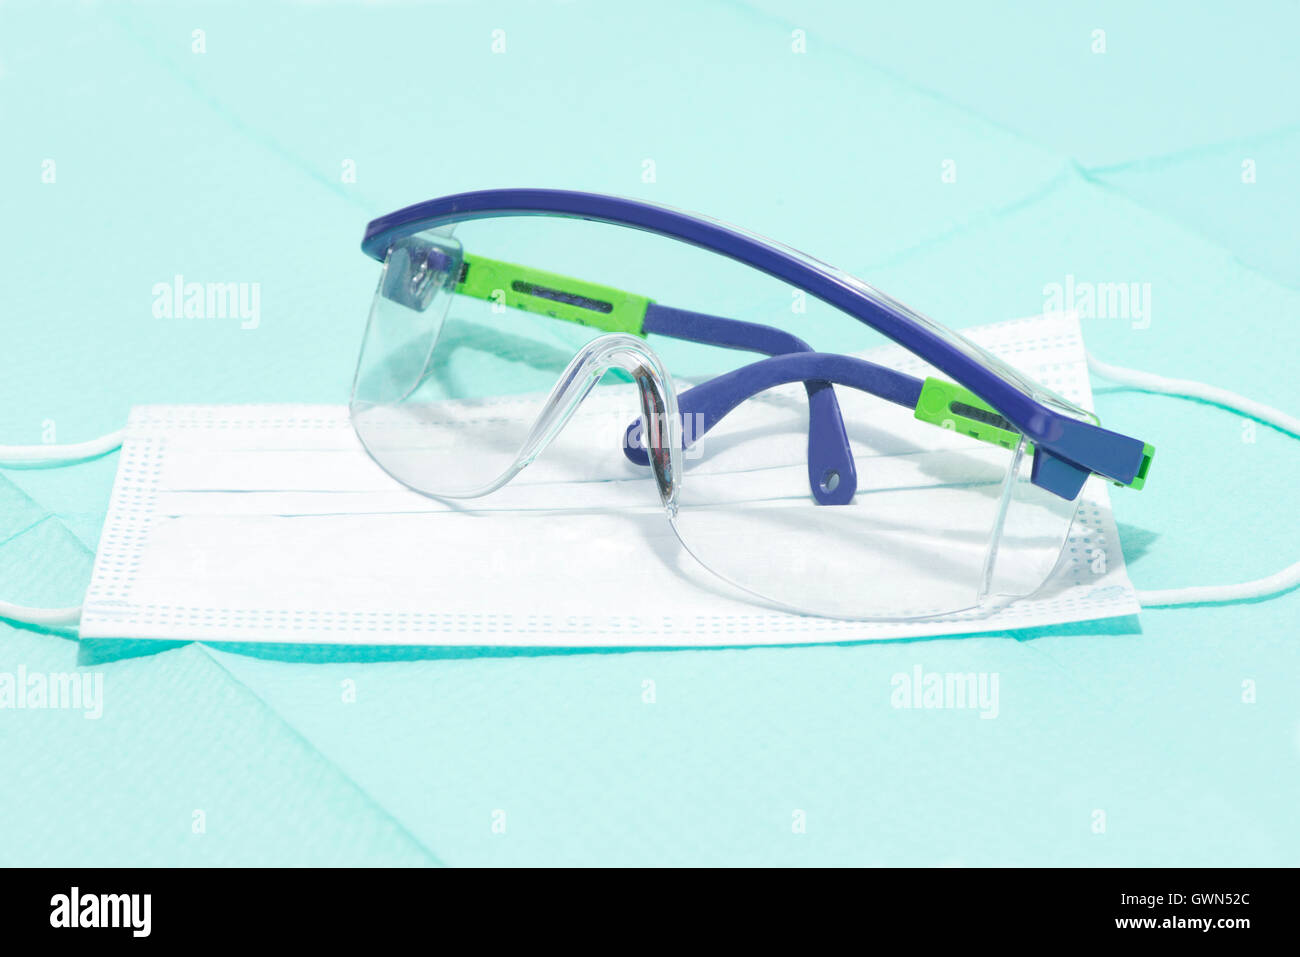 Les lunettes de sécurité et masque sur le champ stérile pour la protection personnelle au cours de procédures médicales. Banque D'Images